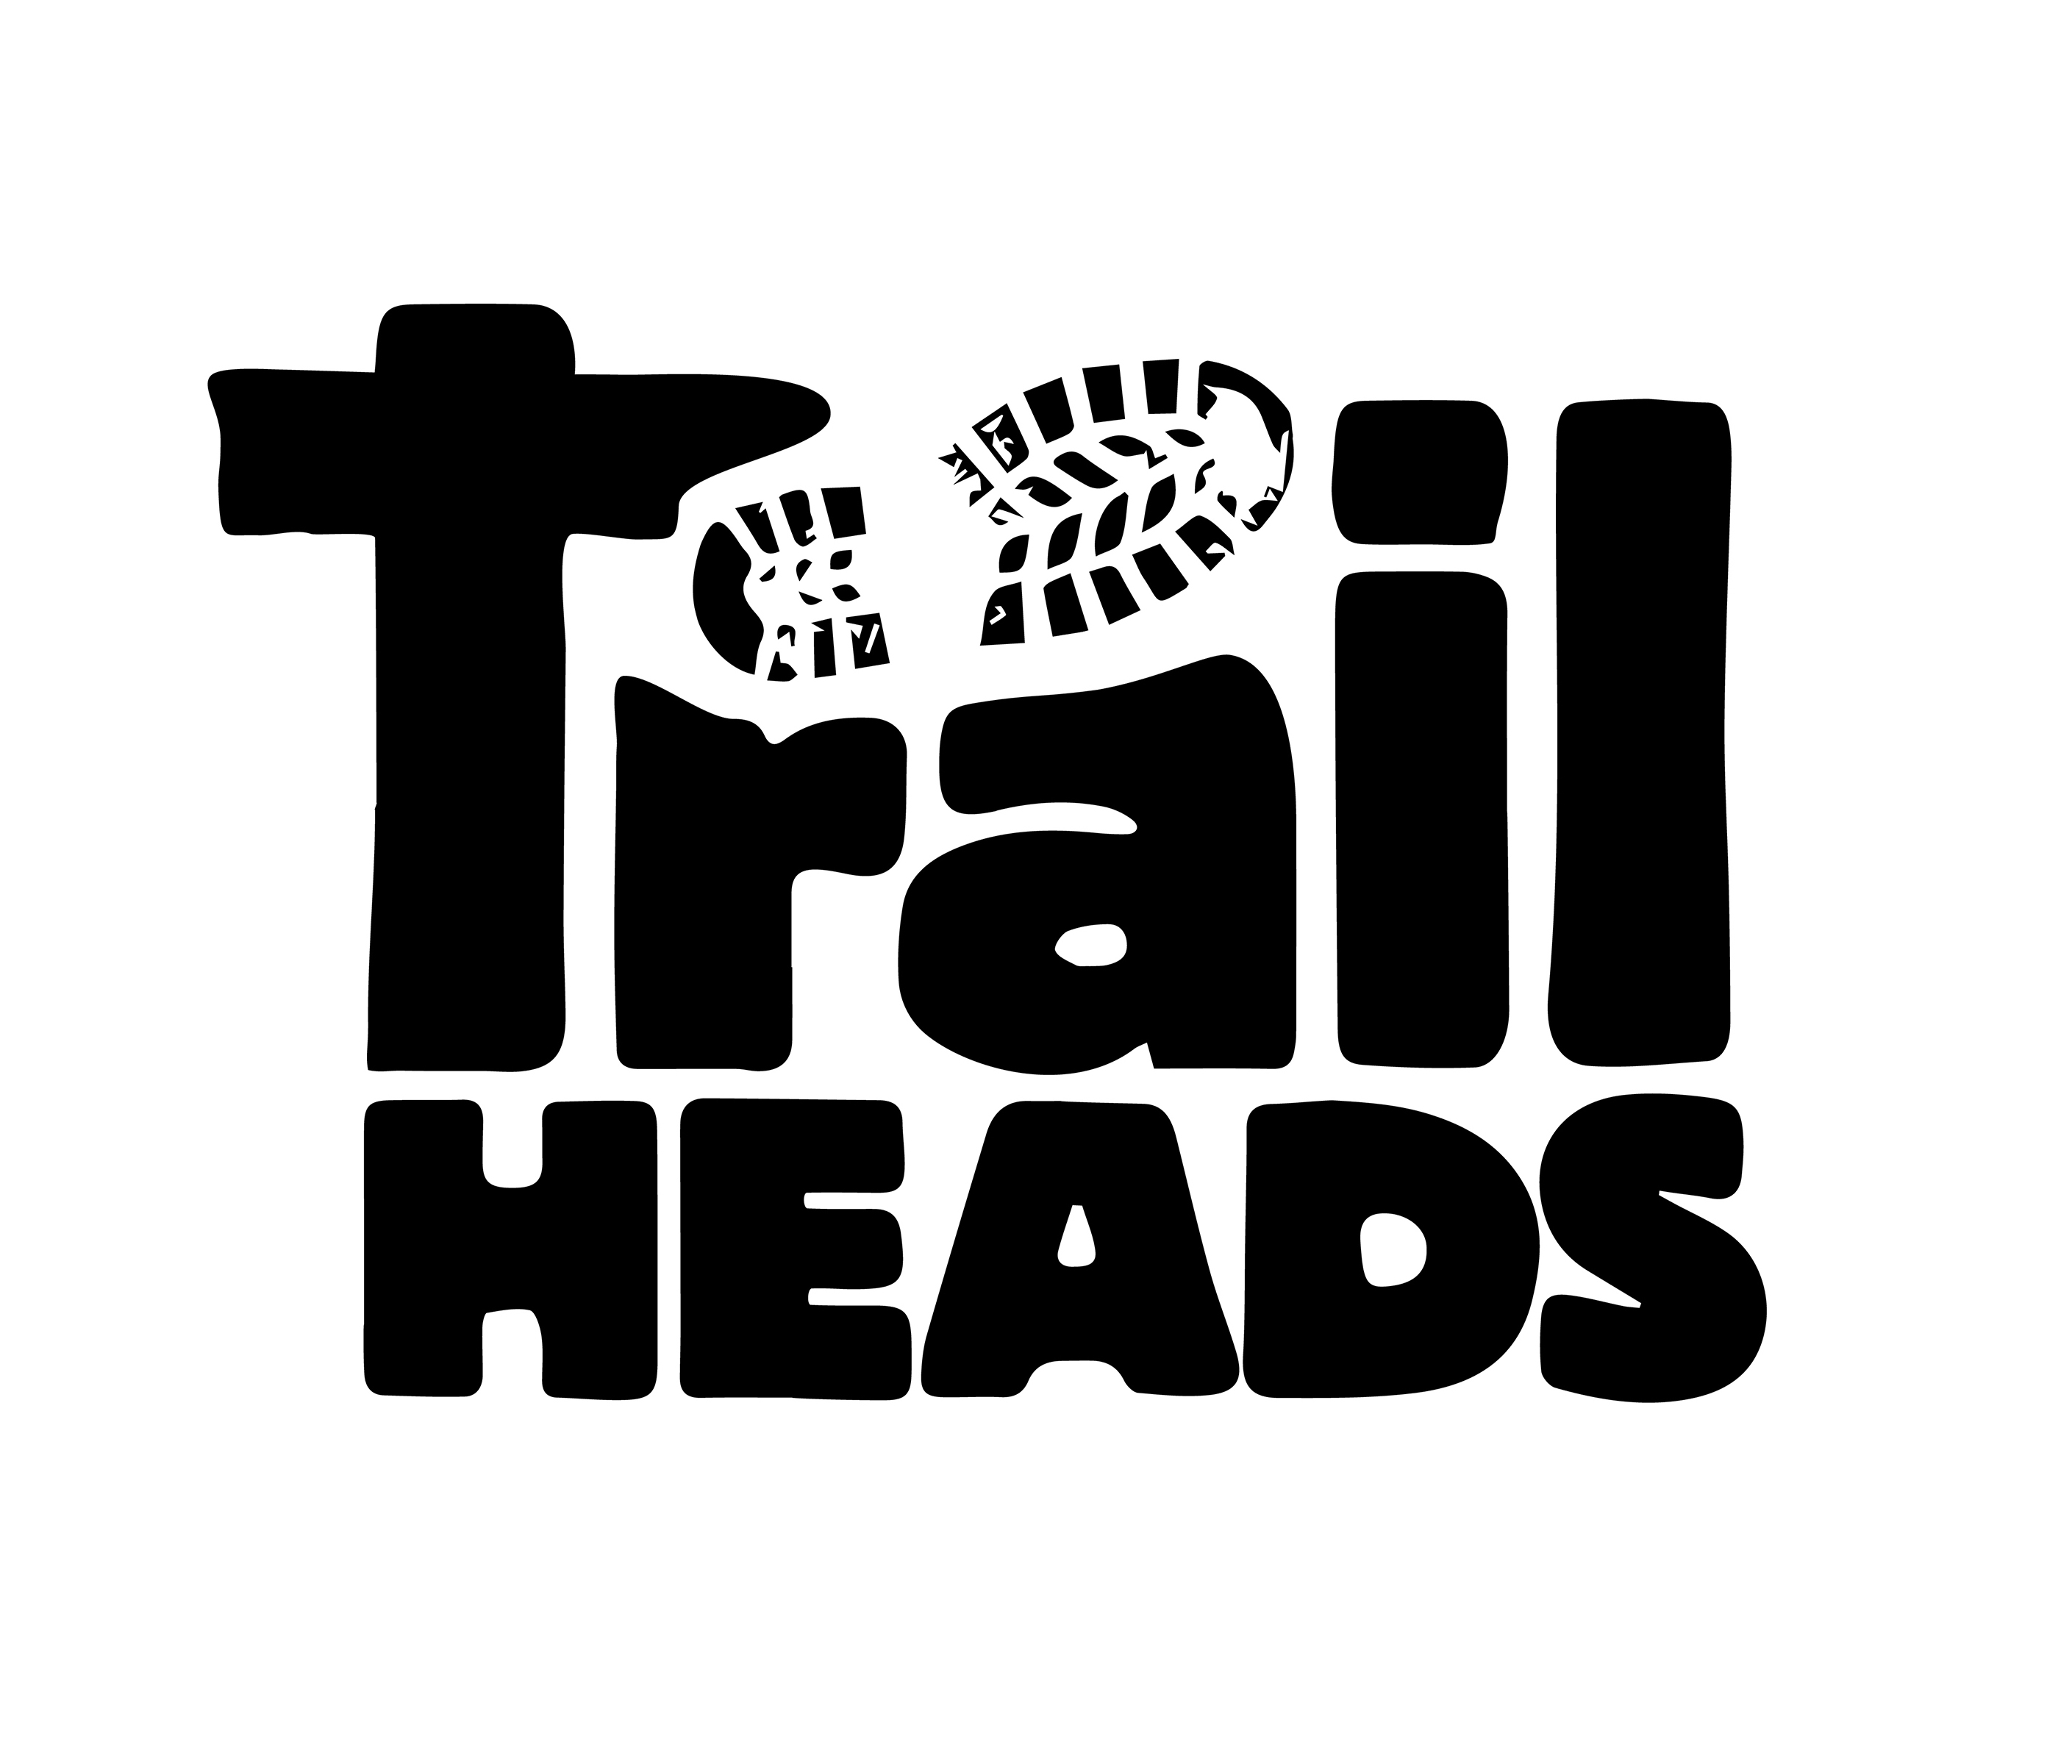 Hiking Brand Logos